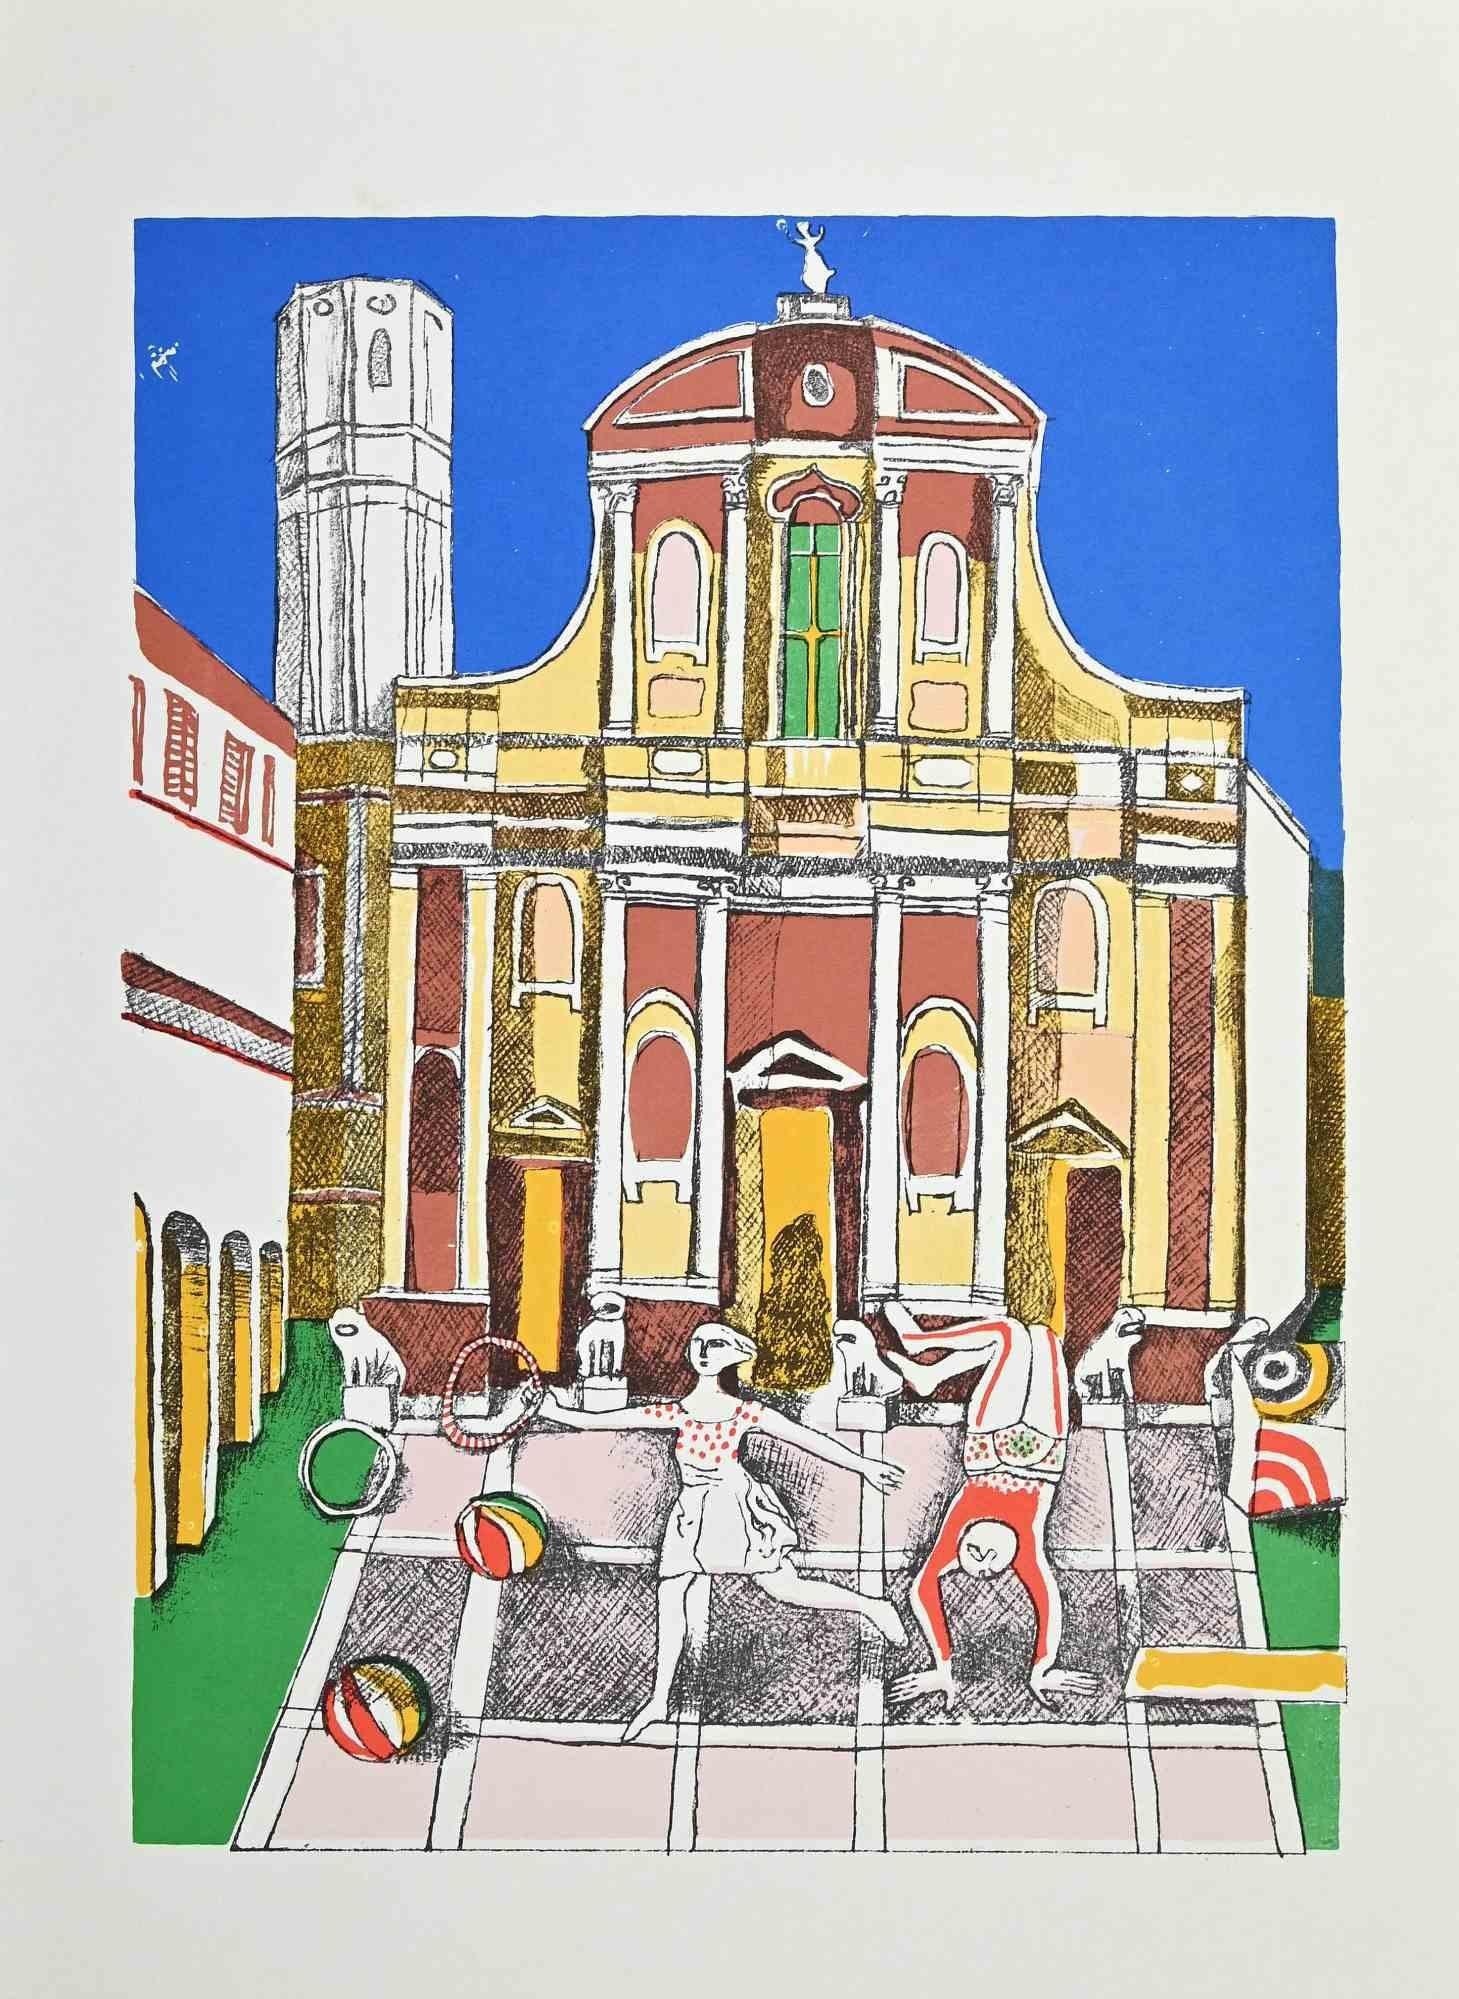 La Cathédrale est une impression offset vintage sur papier ivoire, réalisée par  Franco Gentilini (peintre italien, 1909-1981), dans les années 1970.

L'état de conservation des œuvres d'art est excellent.

Franco Gentilini (peintre italien,